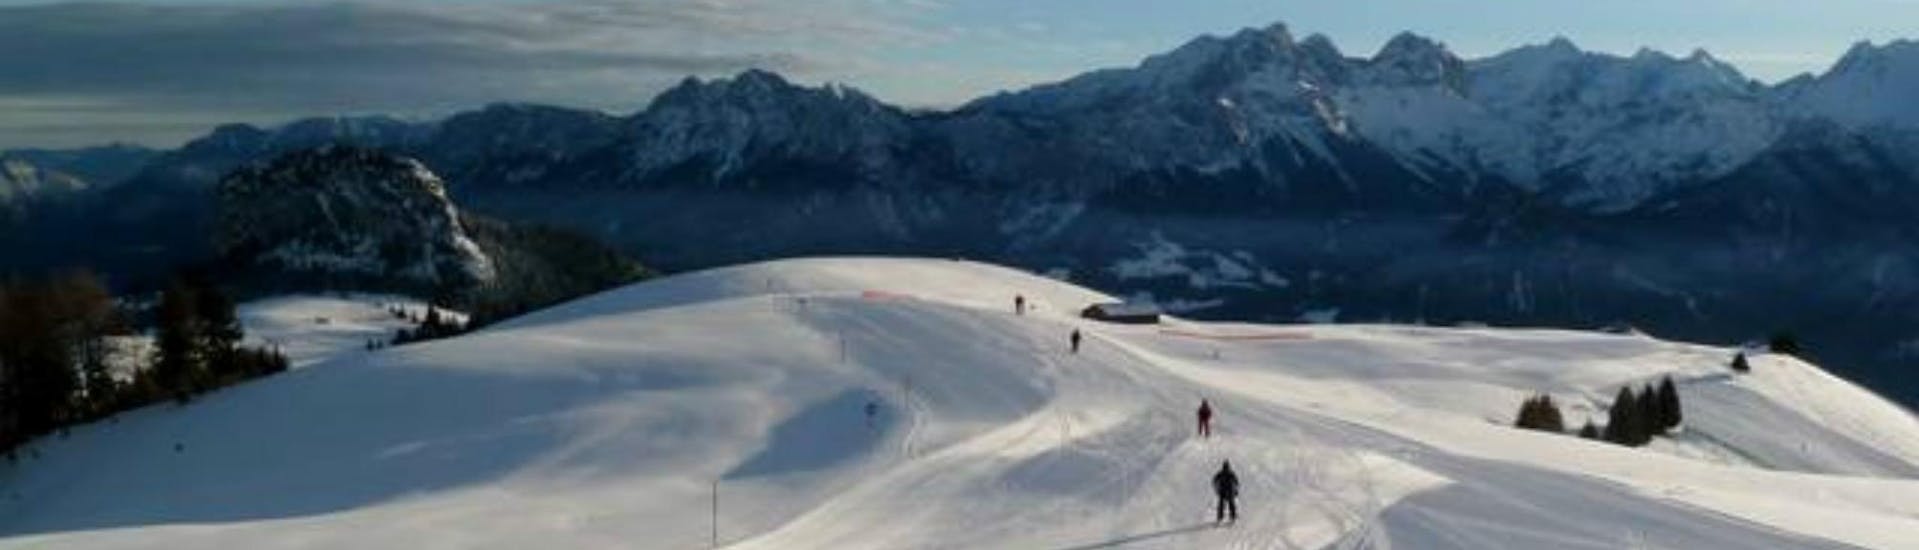 Una vista panoramica del paesaggio montano mentre le persone imparano a siare grazie alle lezioni di sci di una scuola di sci locale presso Loser-Altaussee.